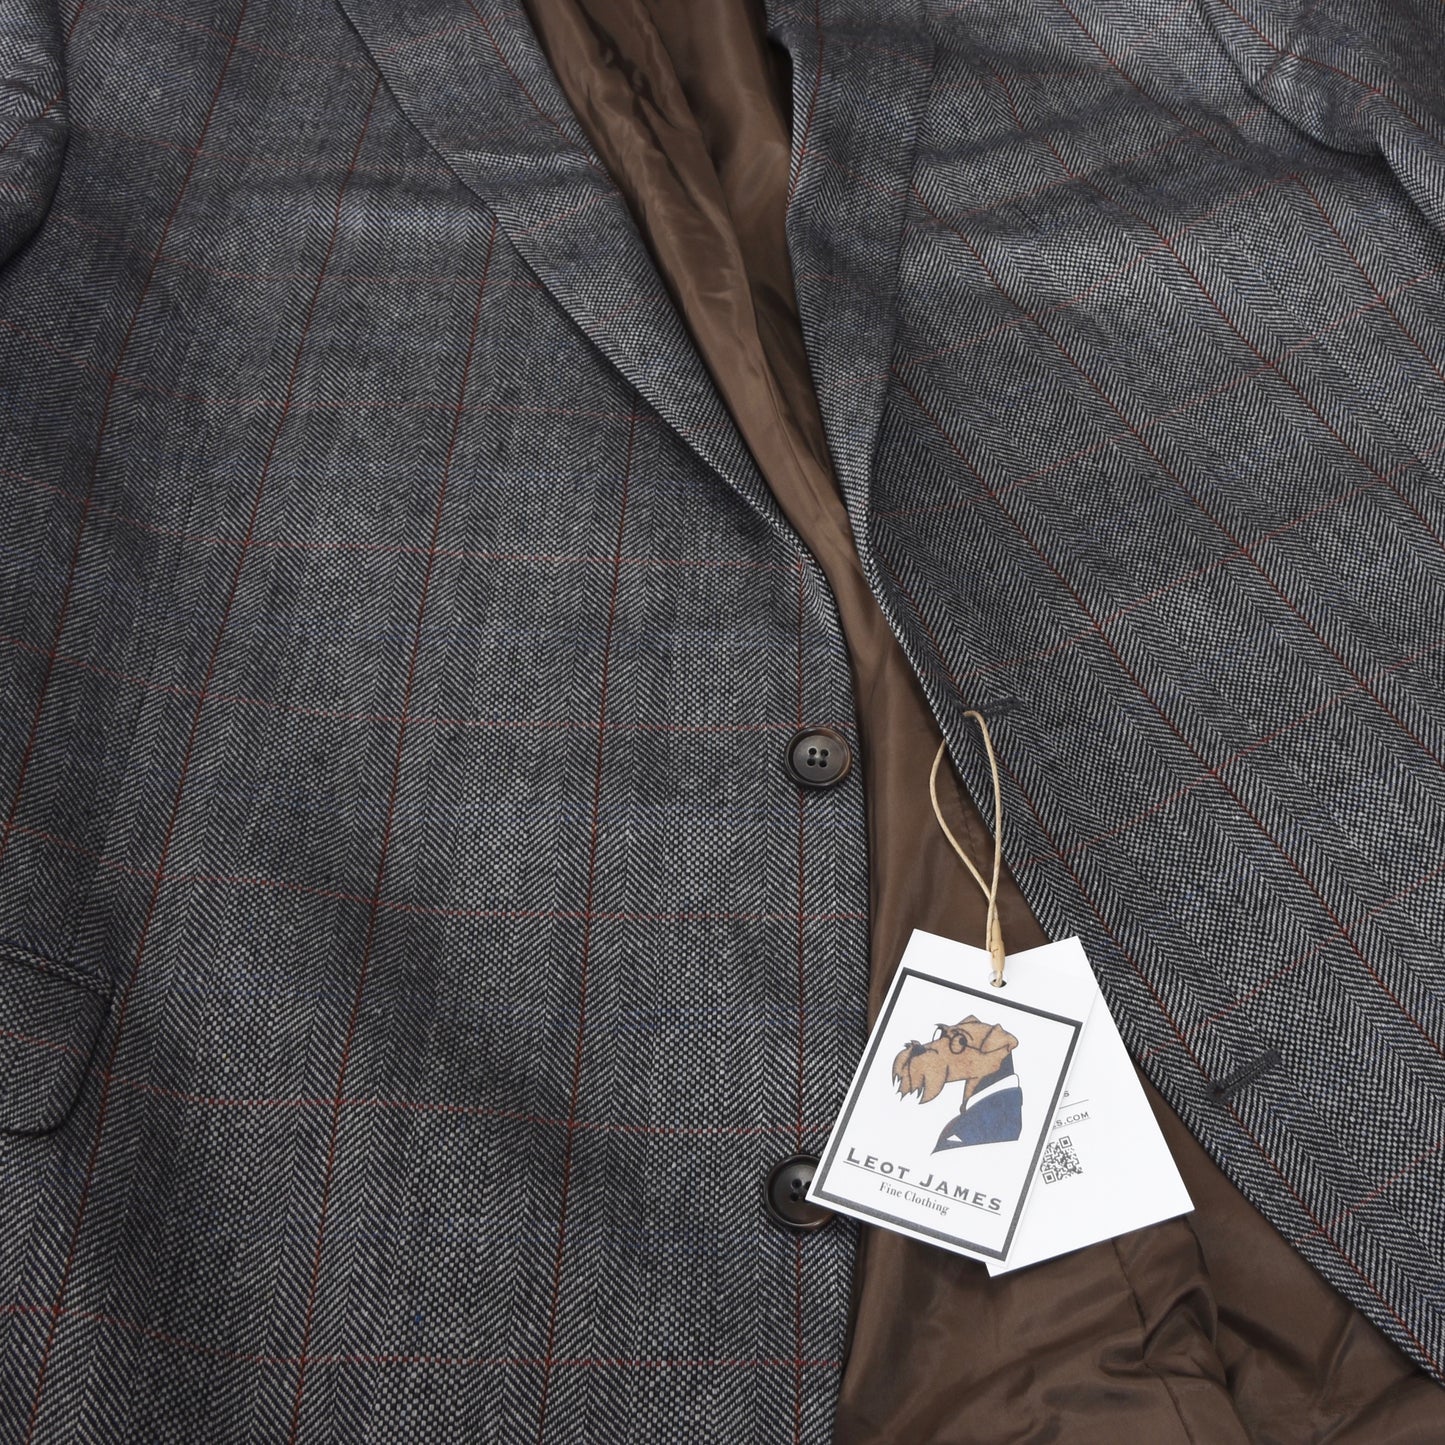 Tom Rusborg 100% Silk Jacket Size 32 - Herringbone